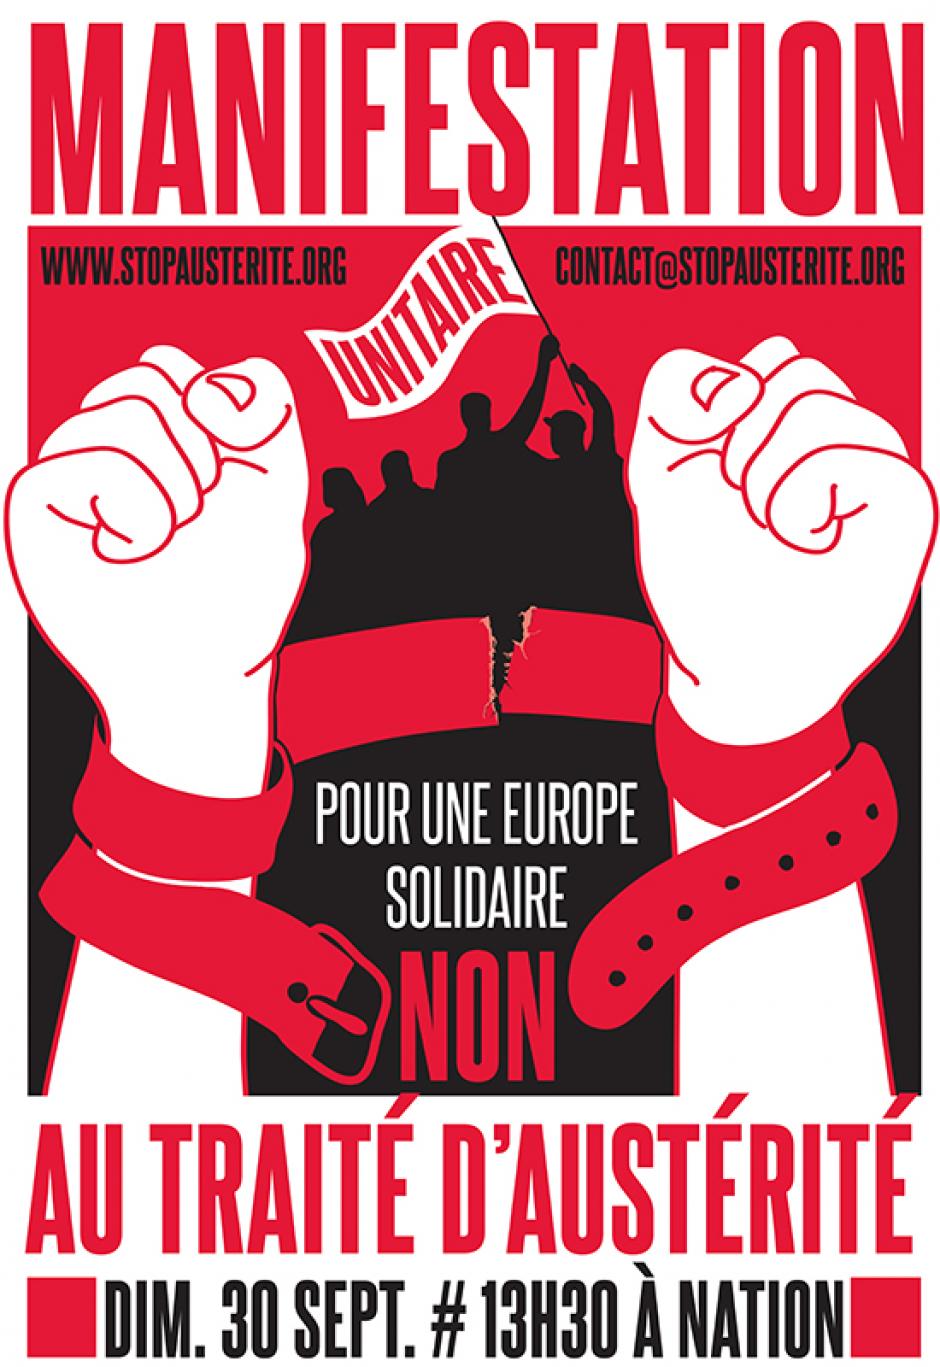 30 septembre, Paris - Manifestation unitaire contre le traité d'austérité